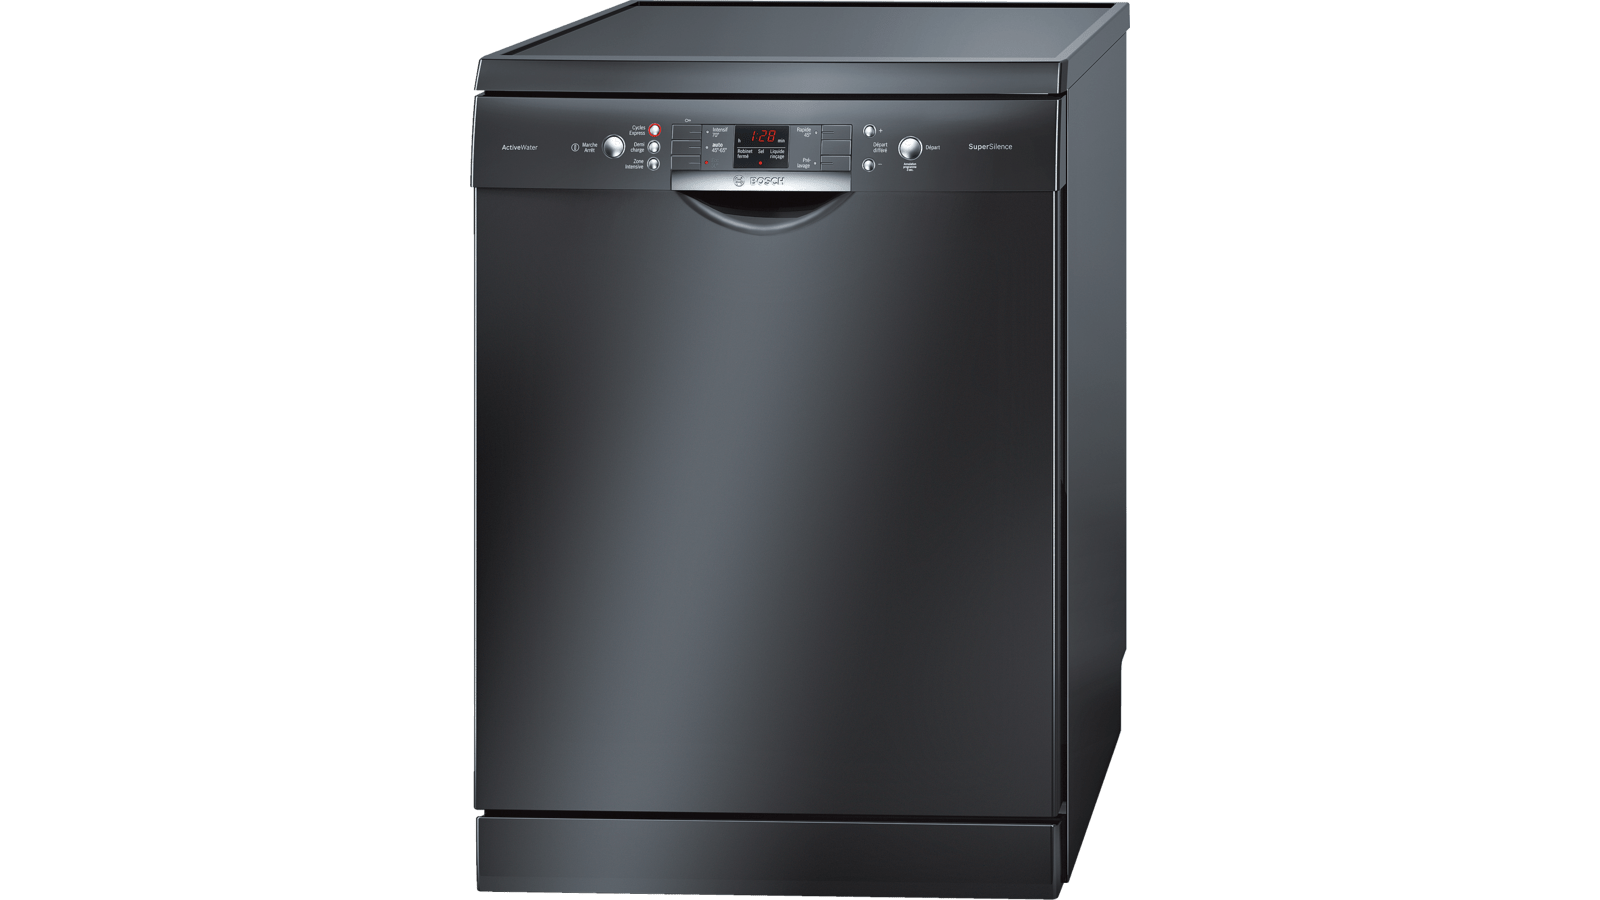 Посудомоечная машина рейтинг цена качество 60. Посудомоечная машина Bosch Silence Plus. Bosch посудомоечная машина черная отдельностоящая 60 см. Посудомоечная машина Bosch SMS 63m42. Посудомоечная машина бош 45 см отдельностоящая.